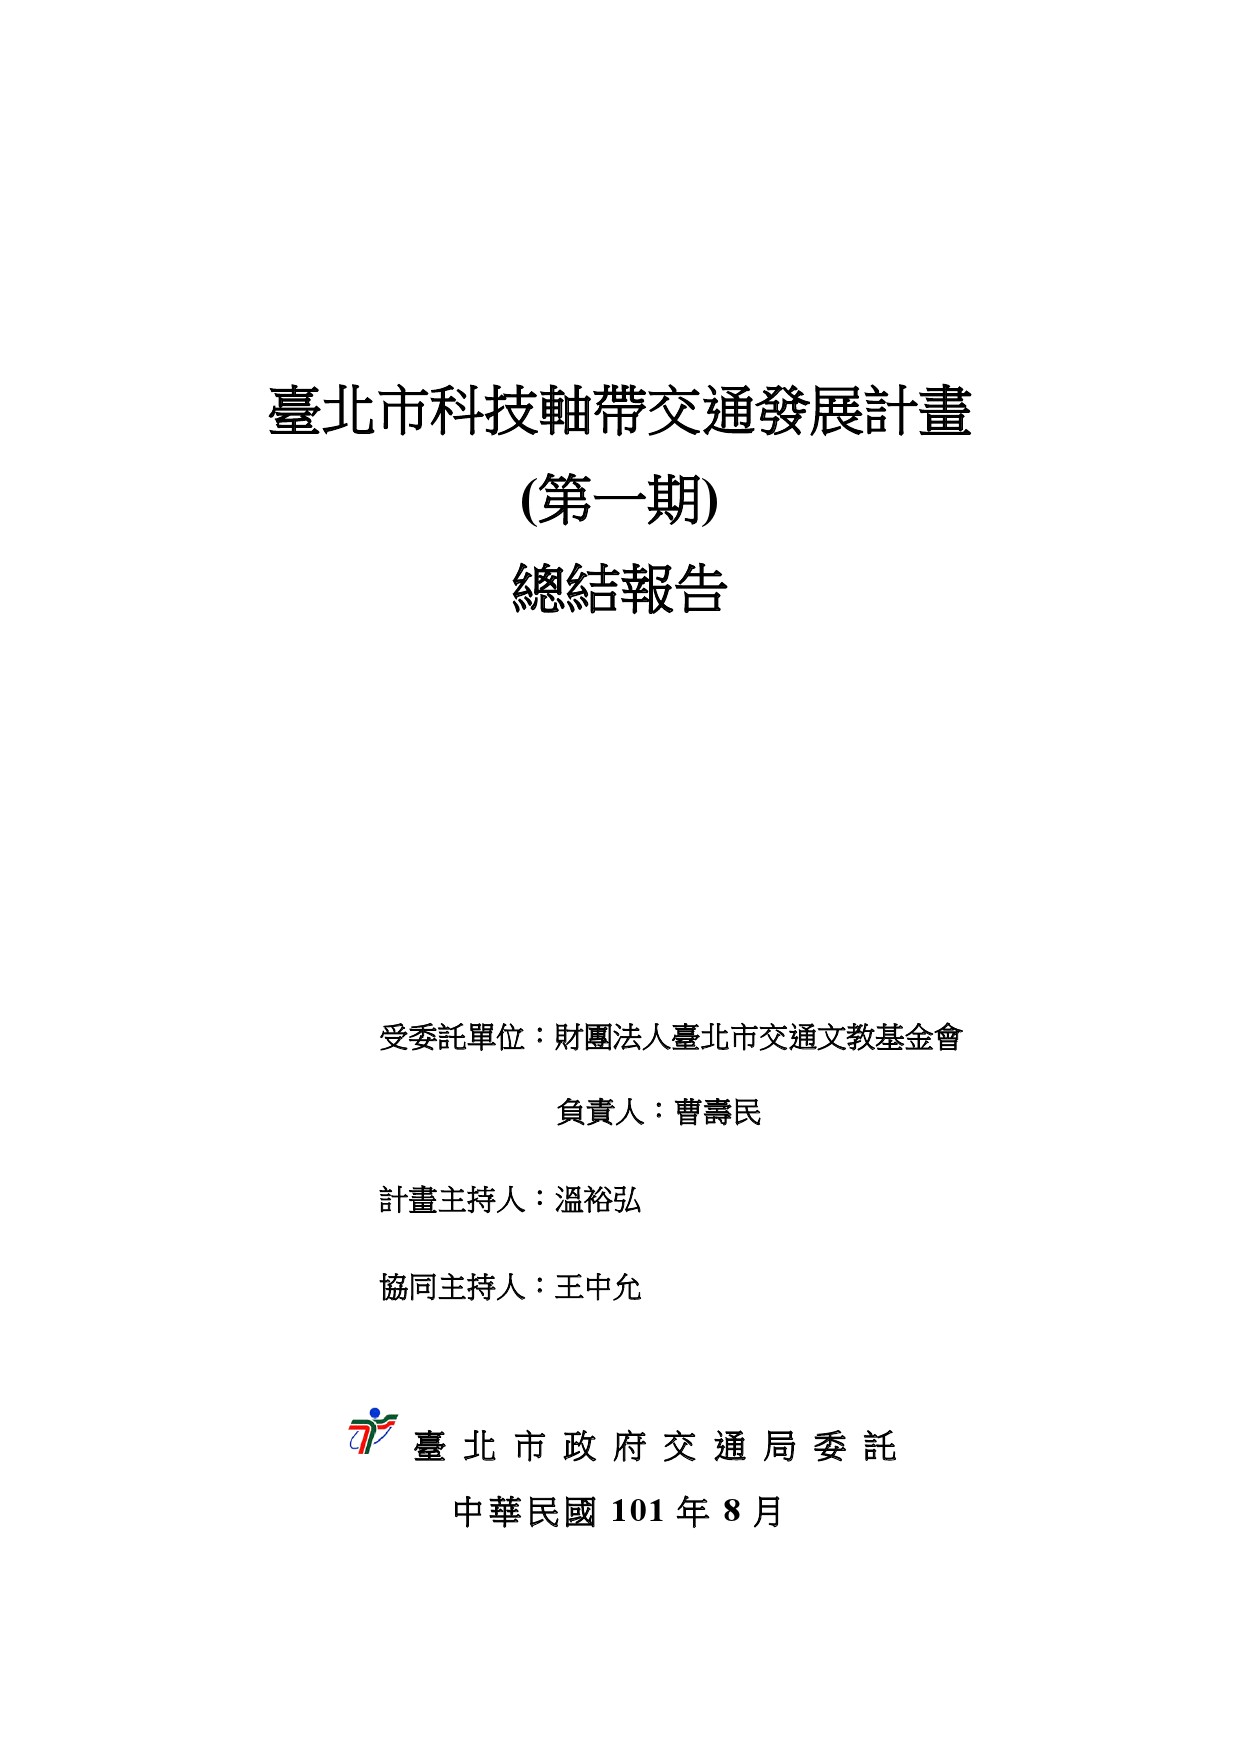 臺北市科技軸帶交通發展計畫(第一期)總結報告